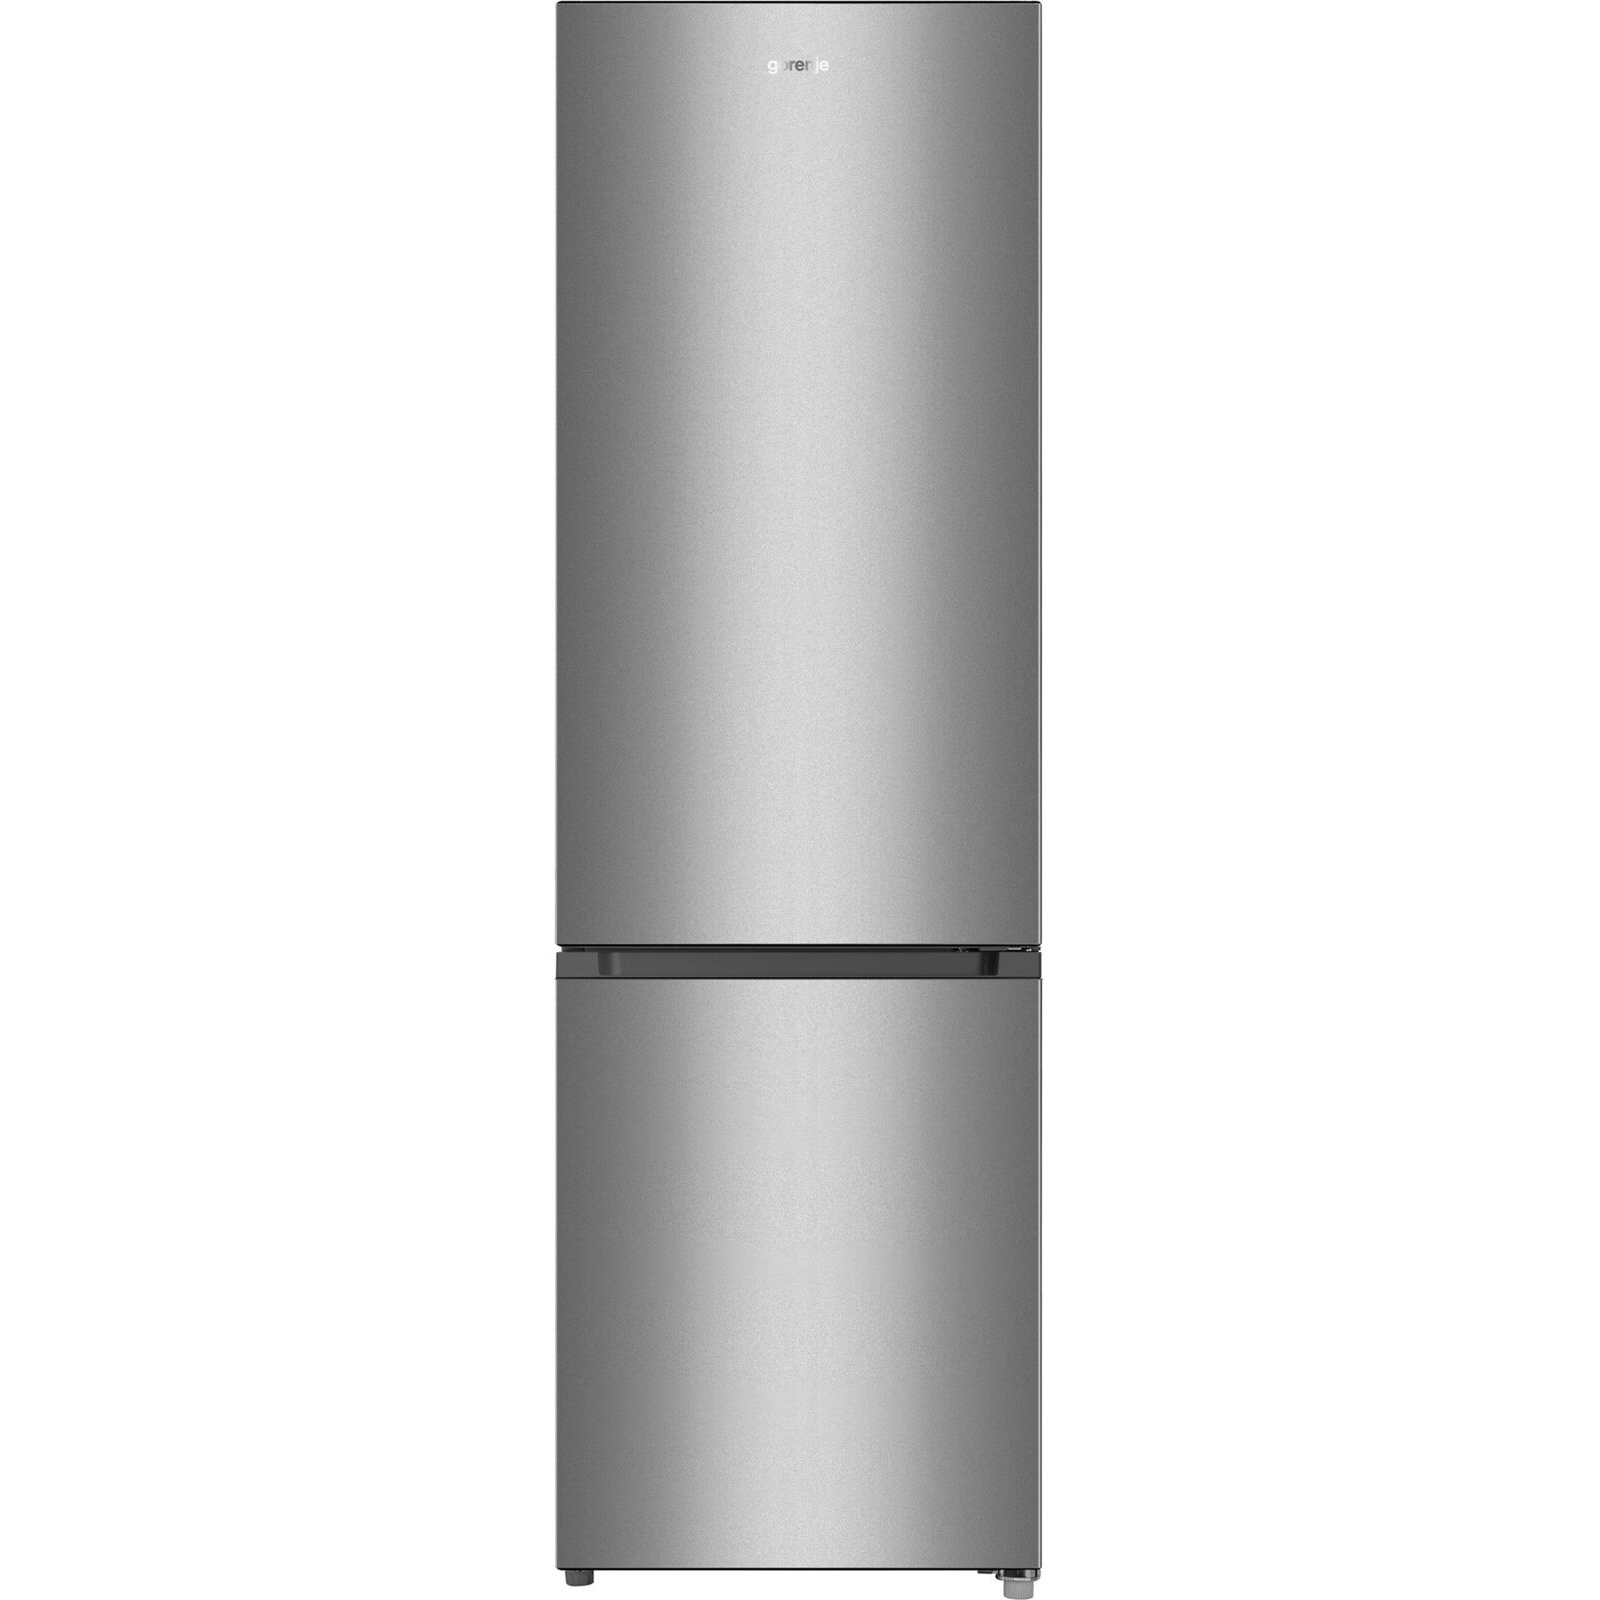 Холодильник Gorenje RK4182PS4